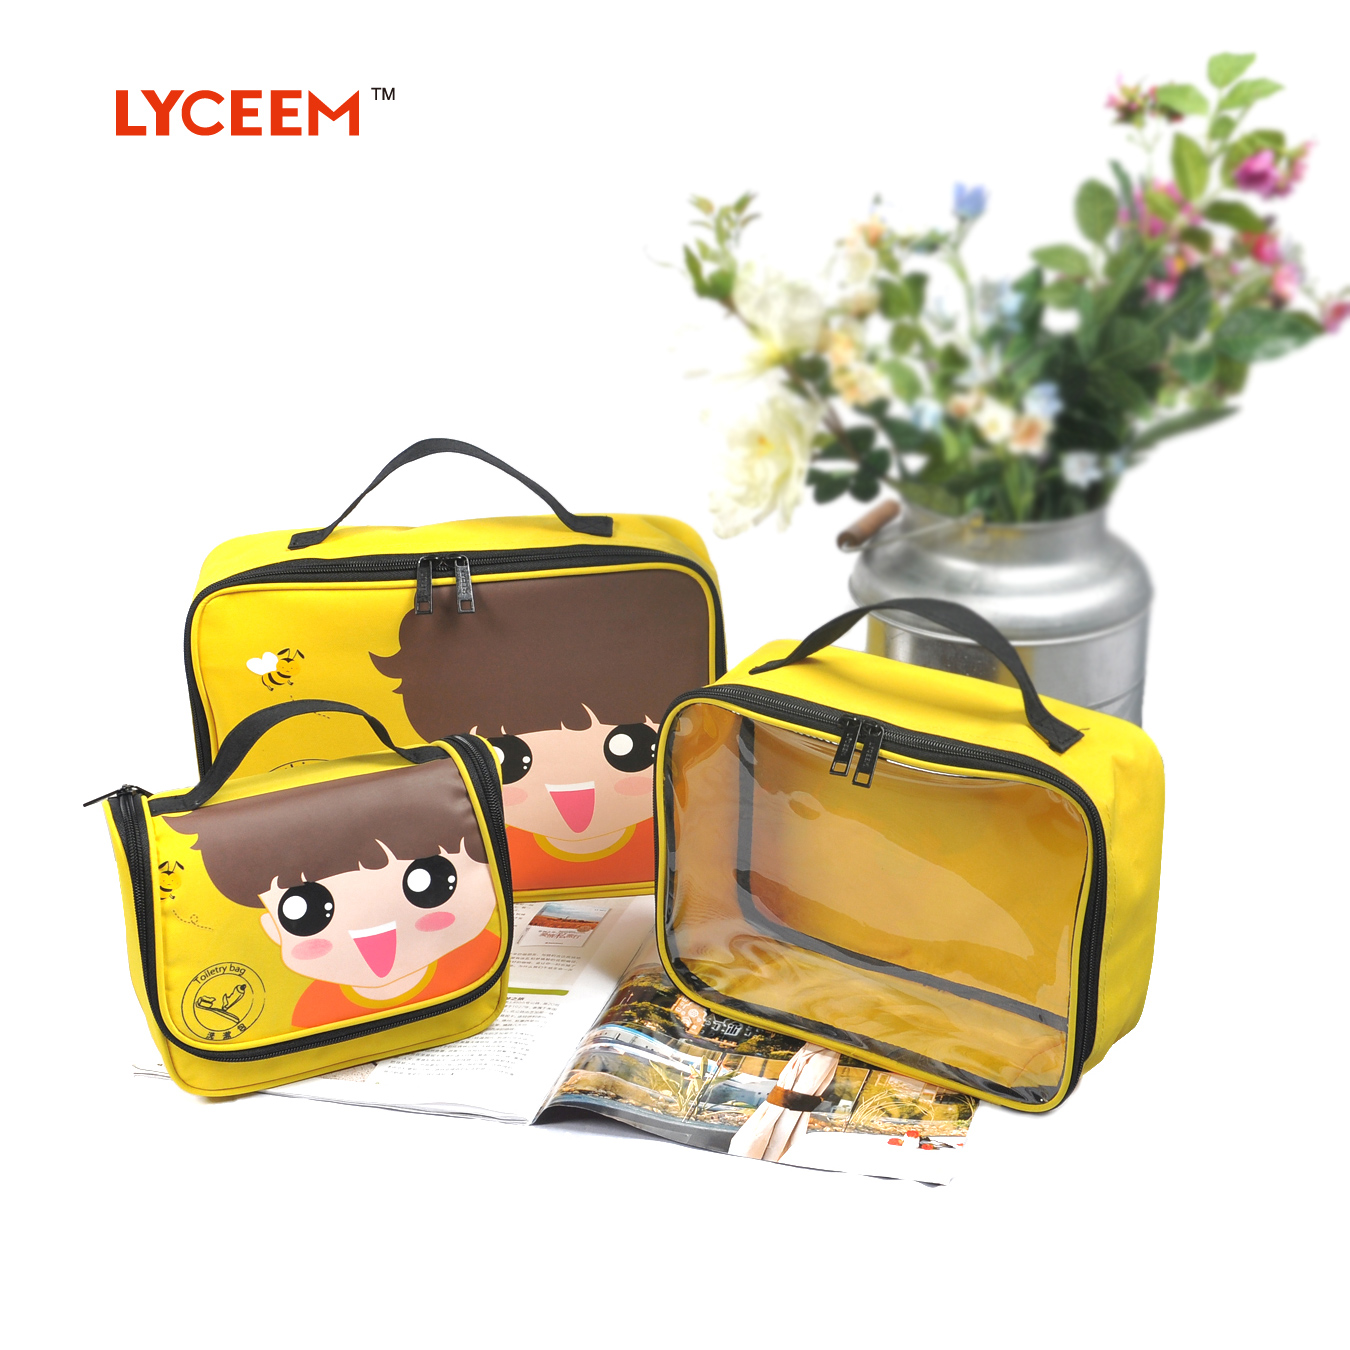 Lyceem/蓝橙 儿童卡通旅游三件套装 旅行洗漱包 鞋包袋 收纳包